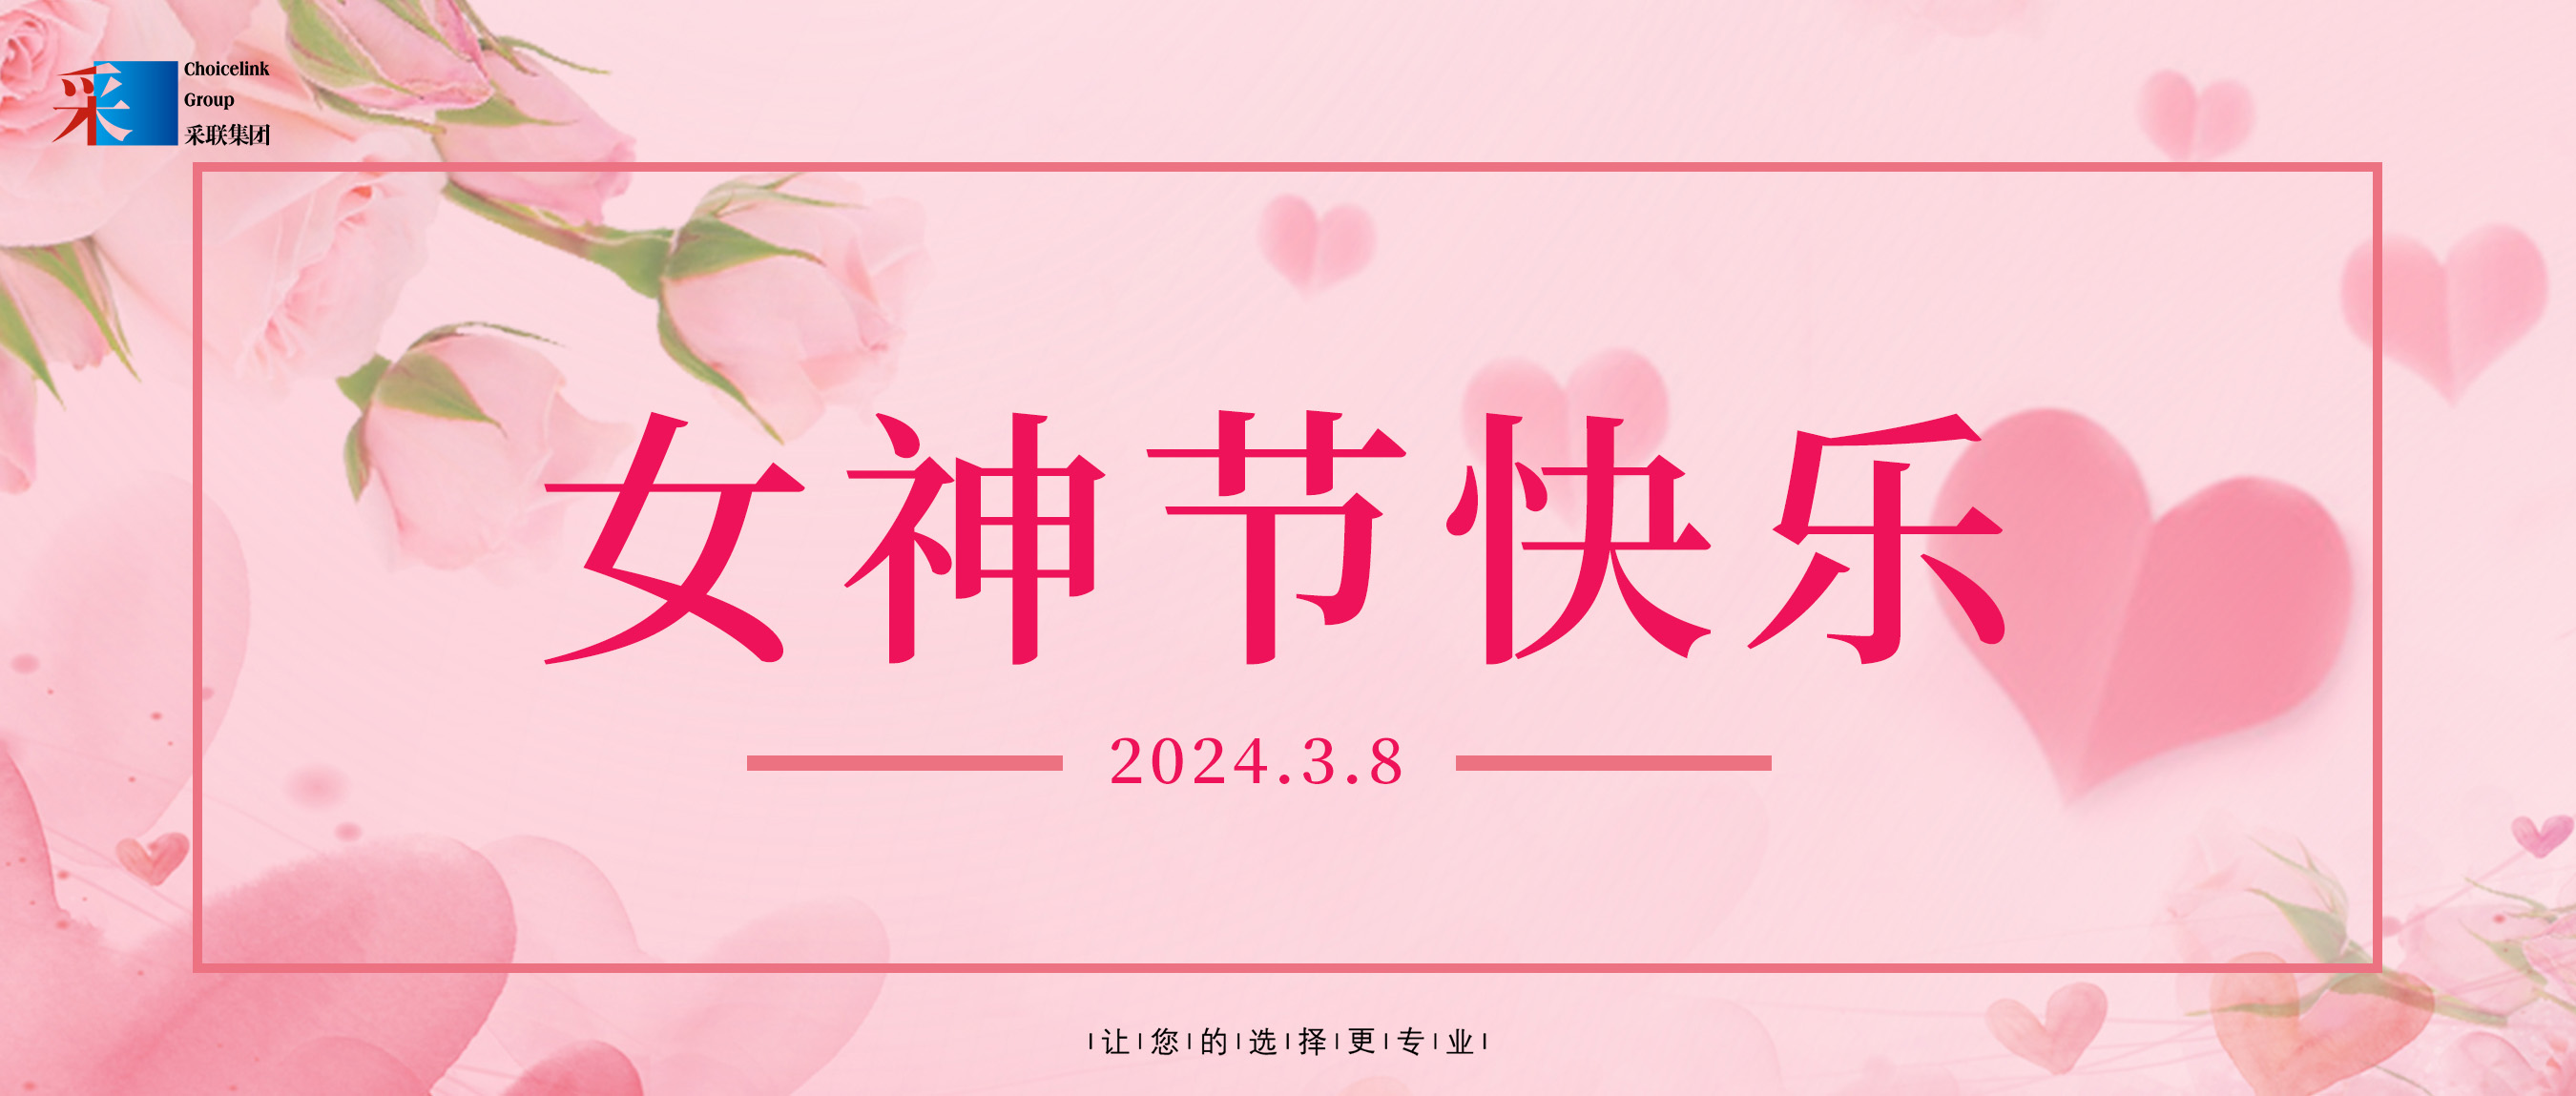 妇女节快乐 ▎香港正挂挂牌正版图解祝所有女性节日快乐